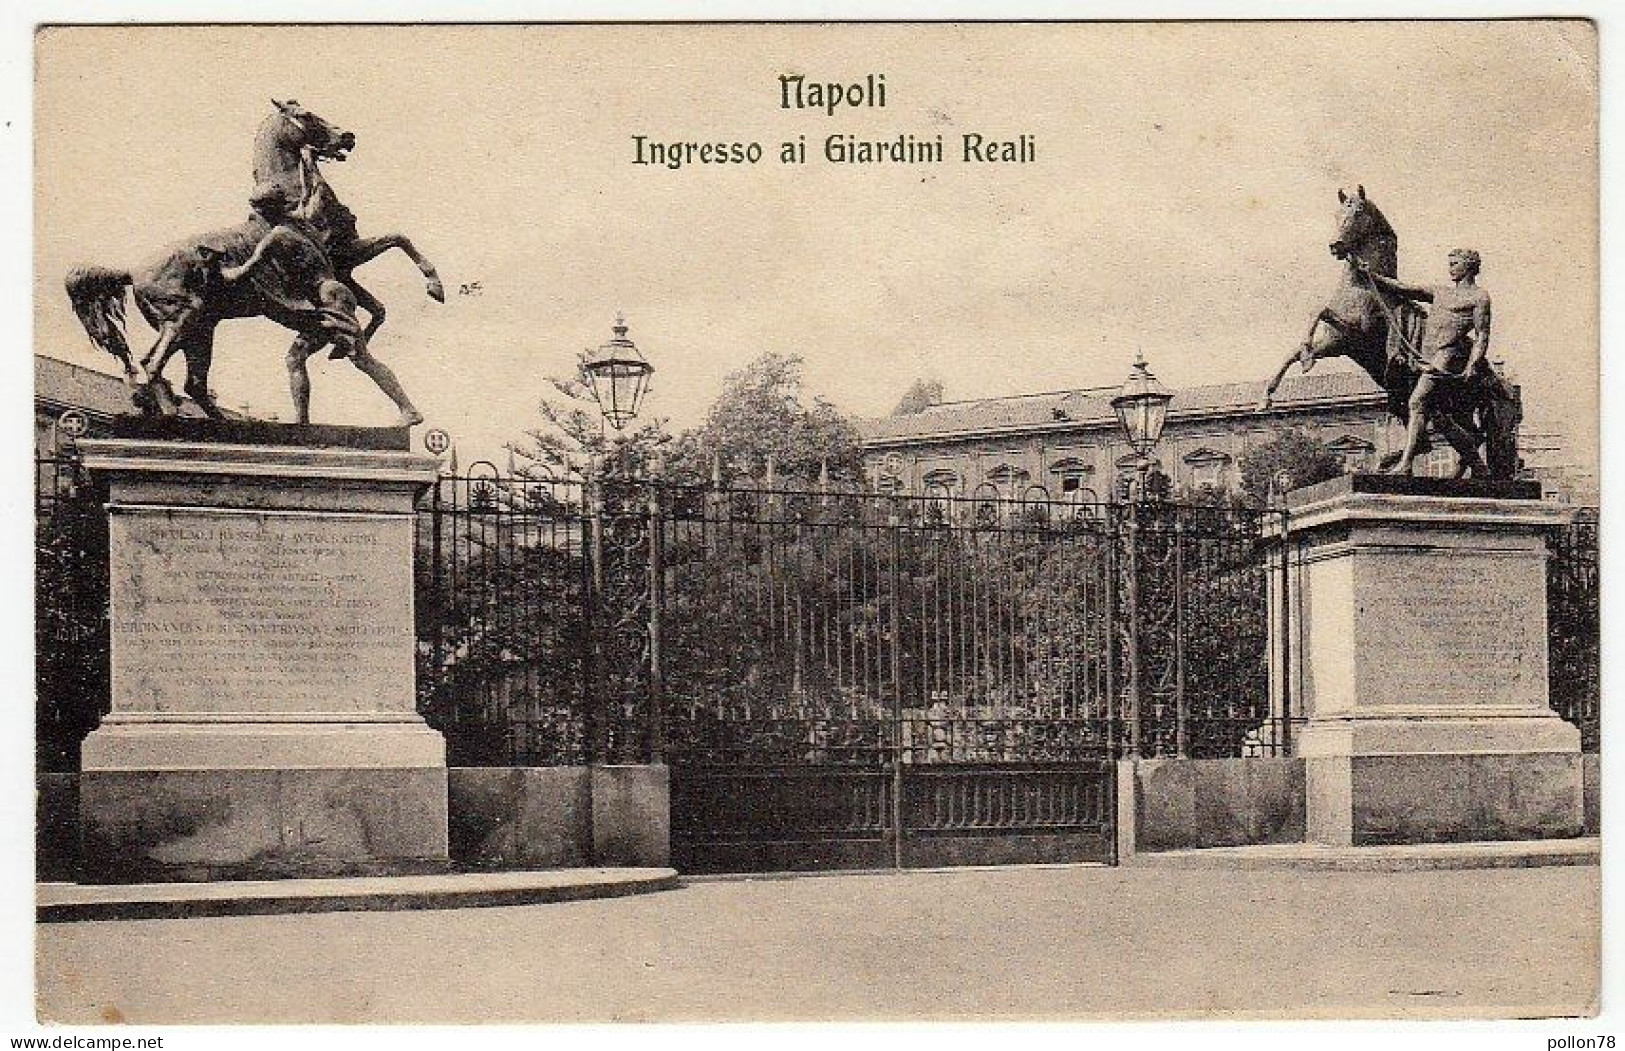 NAPOLI - INGRESSO GIARDINI REALI - 1912 - Vedi Retro - Formato Piccolo - Napoli (Neapel)